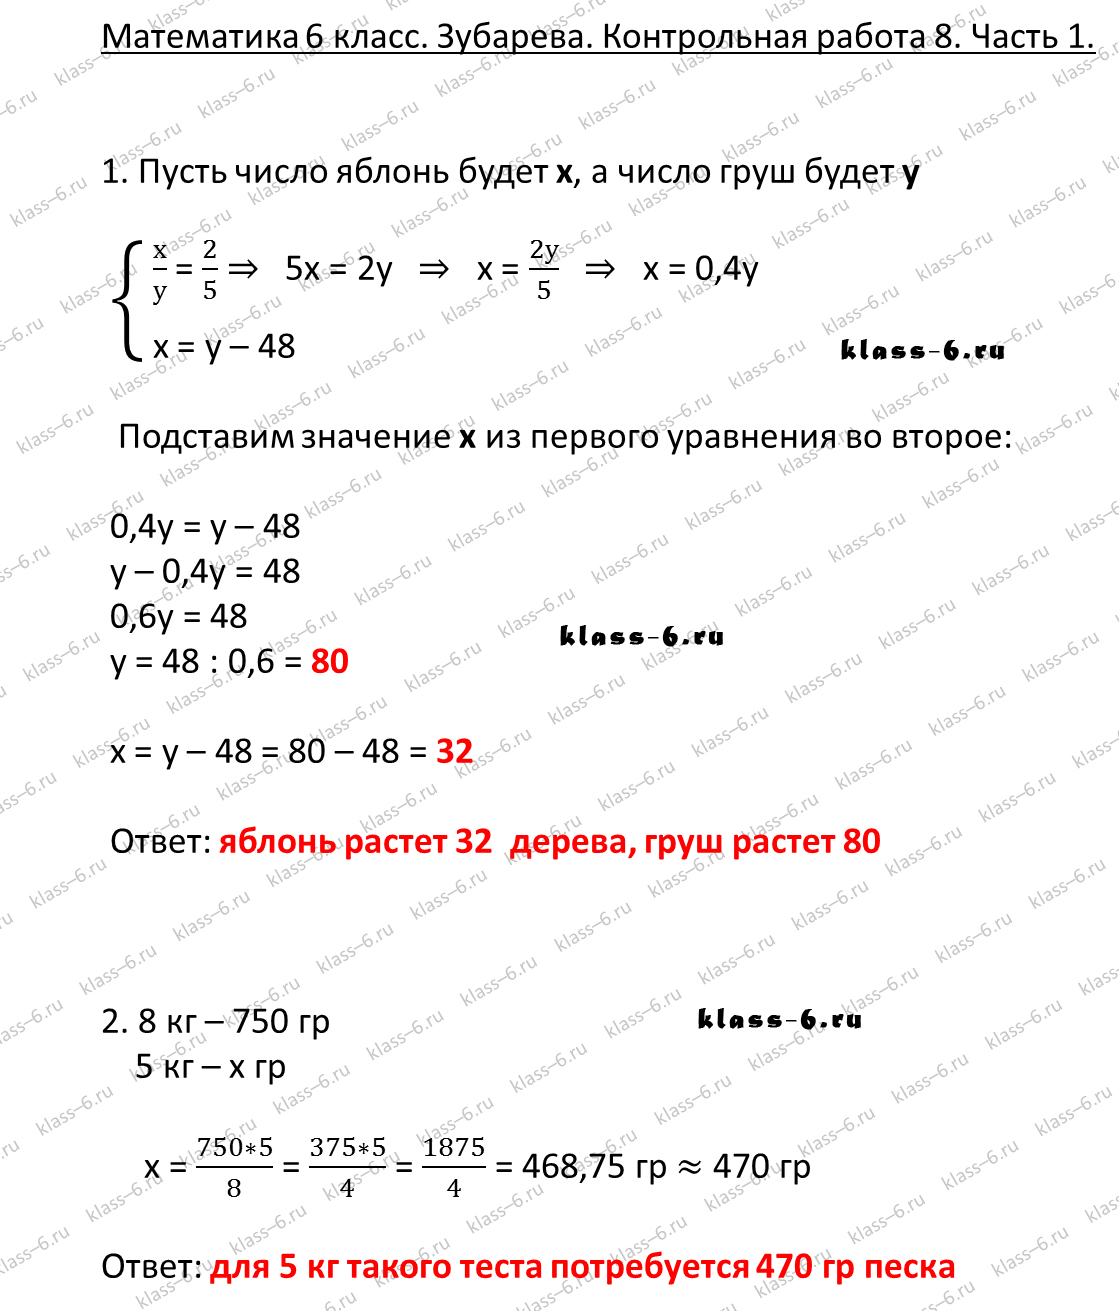 гдз математика Зубарева 6 класс ответ и подробное решение с объяснениями контрольной работы № 8 (1)